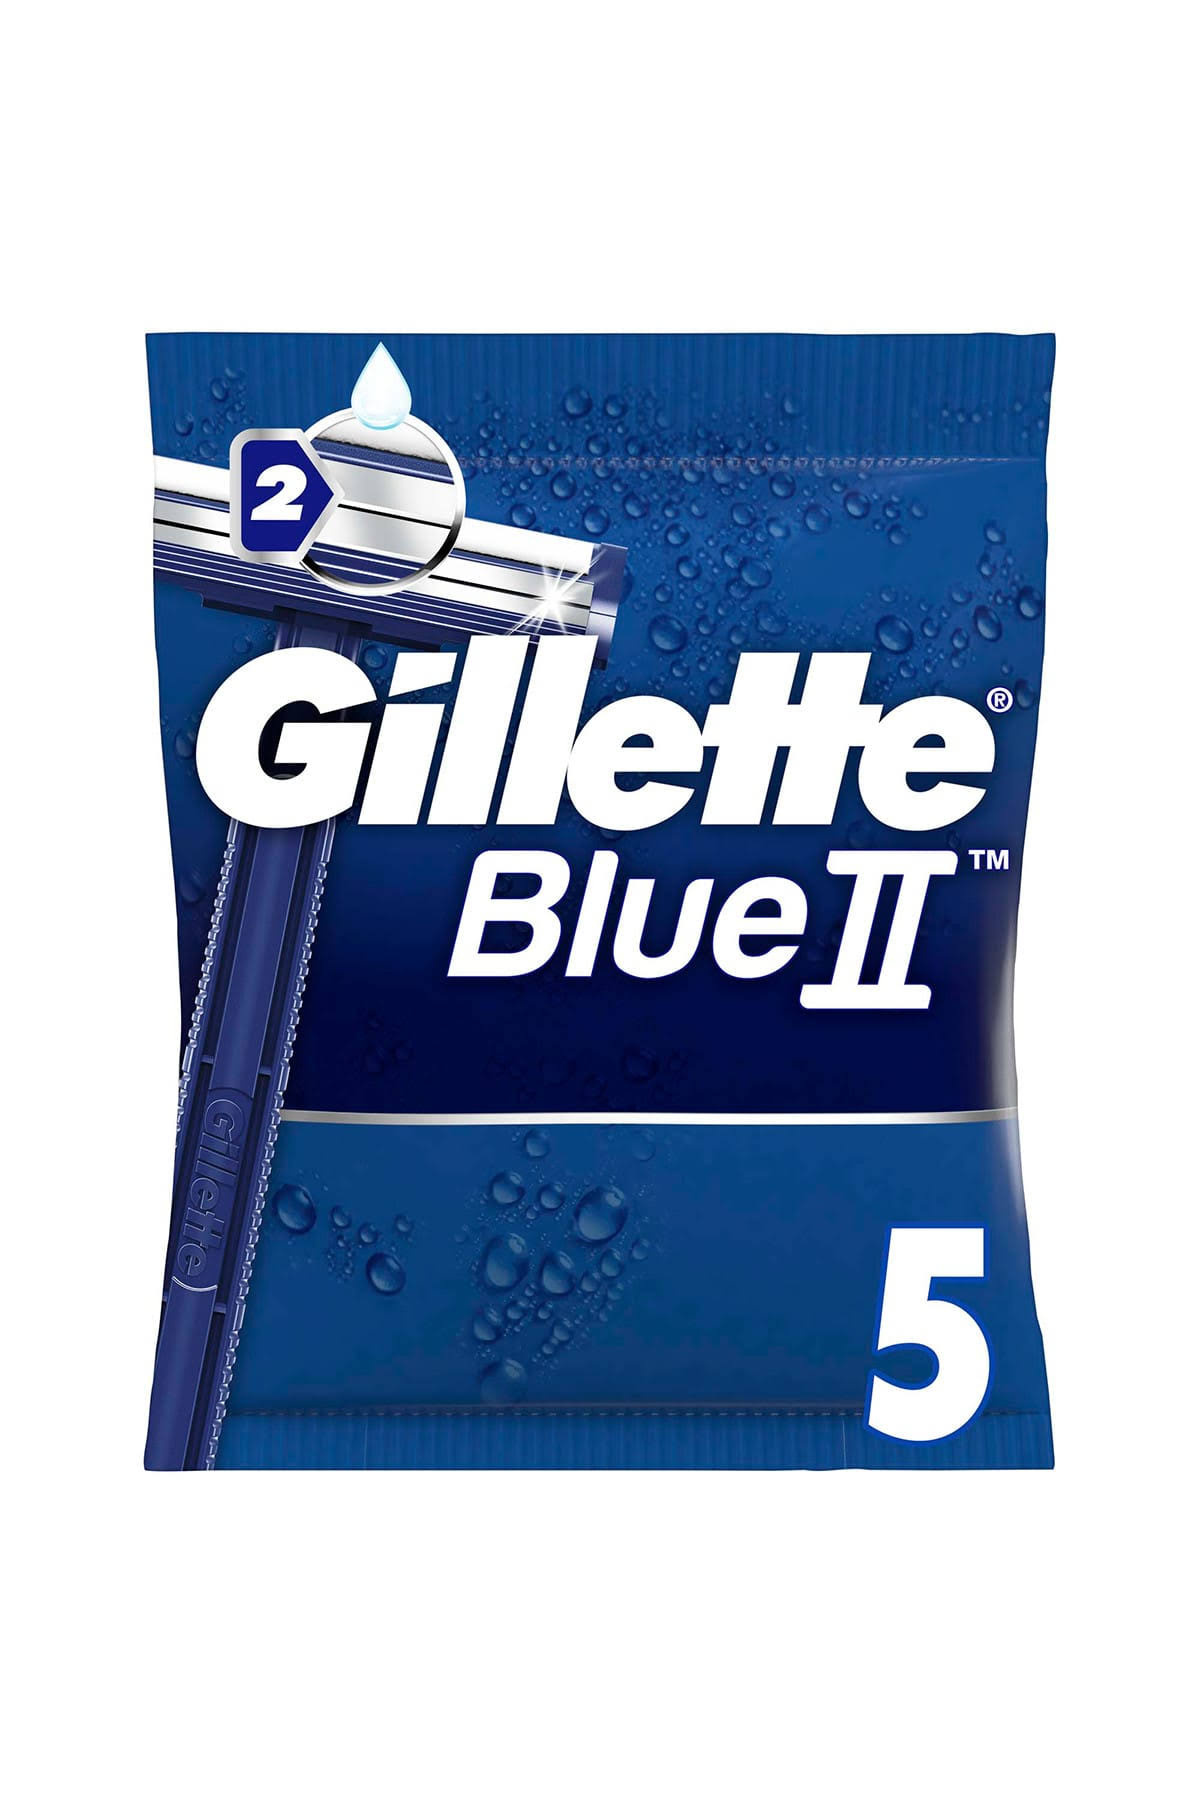 Gillette Blue II Chromium Men’s Disposable Razors - 5 Pack